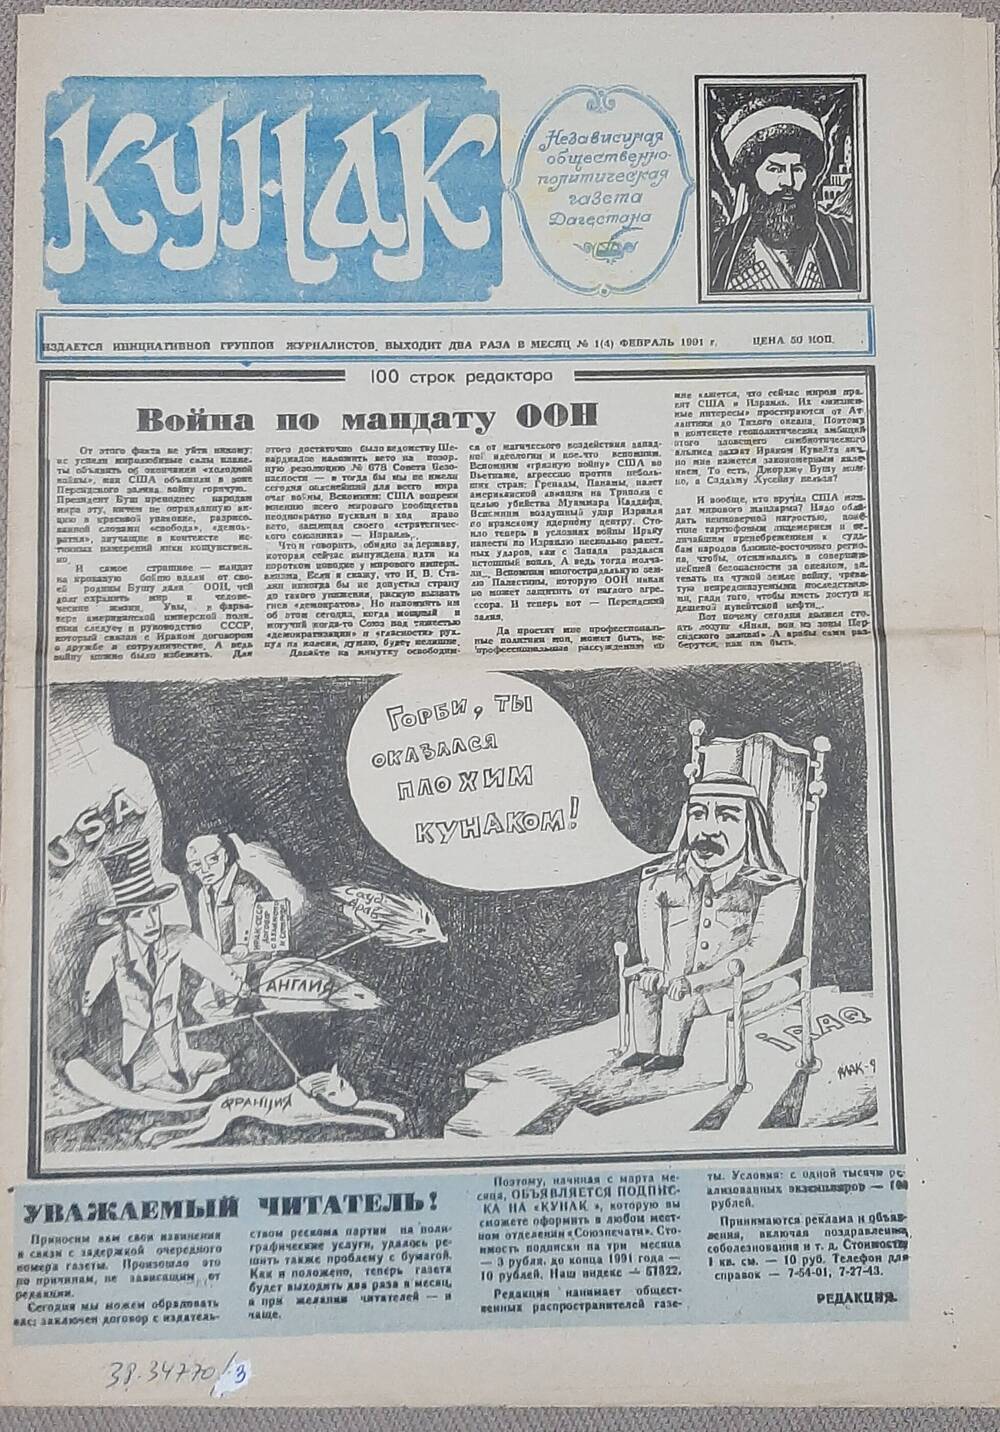 Газета  Кунак № 1 за февраль 1991 г. Содержит статью   о  Шамиле и его наследниках